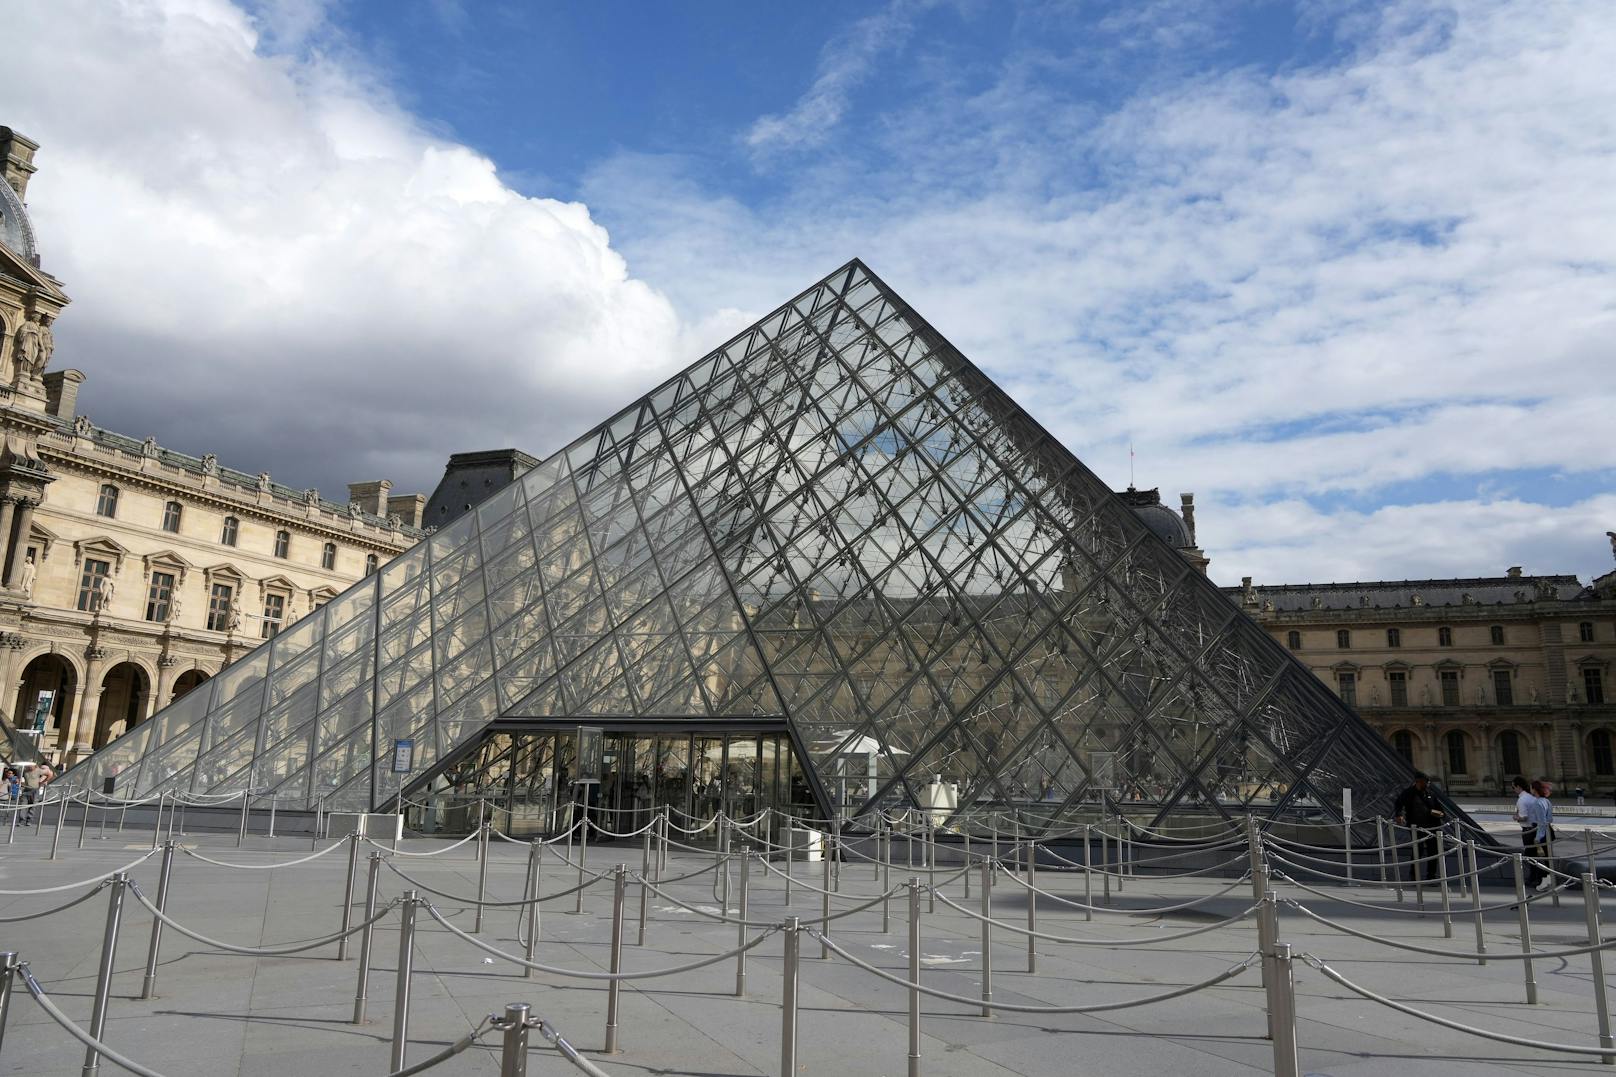 Das Pariser Louvre musste am Samstag wegen einer Bombendrohung schließen. Videos zeigen Besucher, die in Panik flüchten.